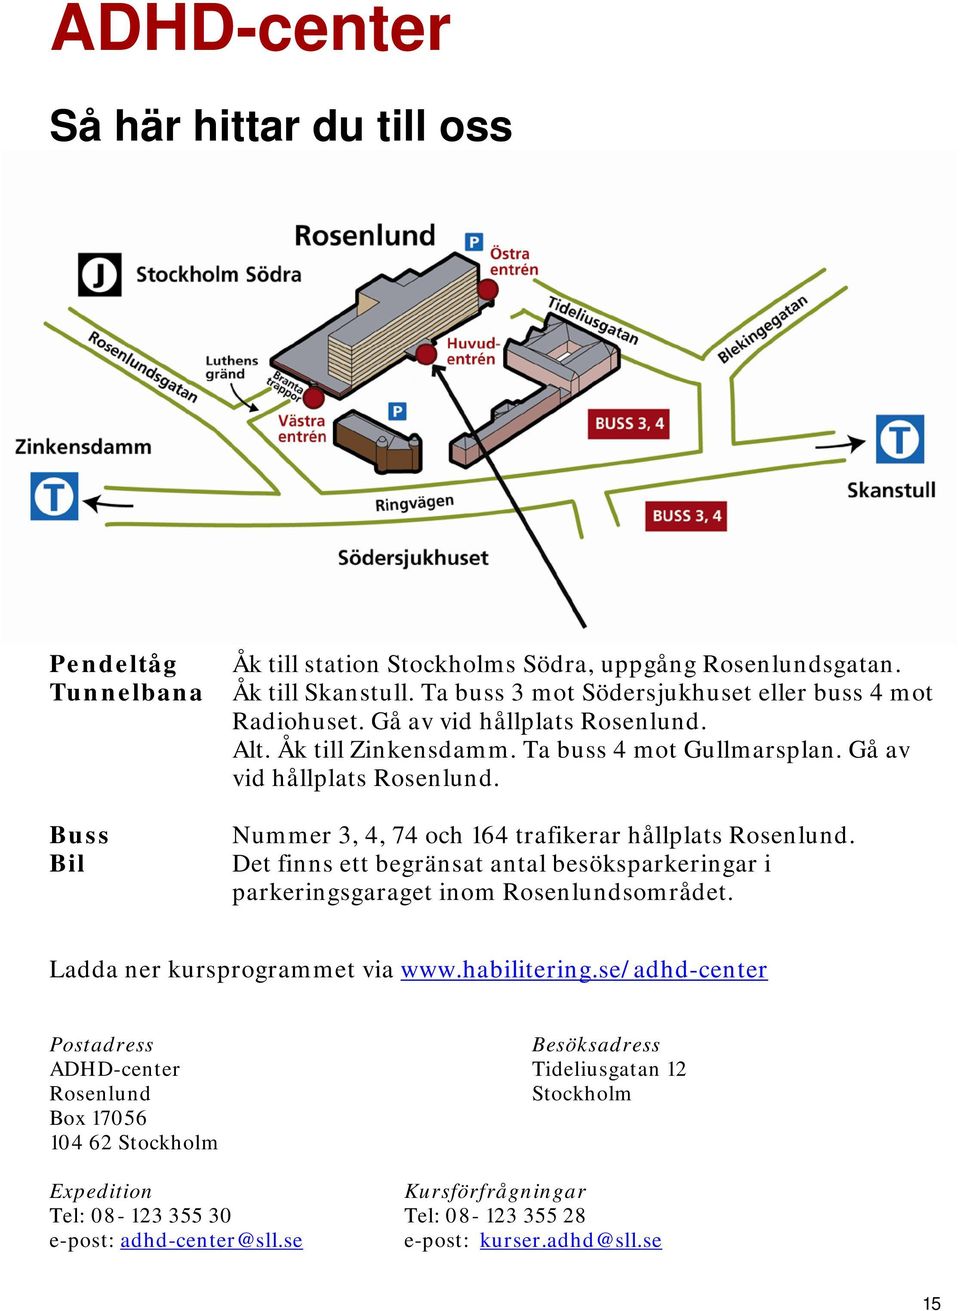 Det finns ett begränsat antal besöksparkeringar i parkeringsgaraget inom Rosenlundsområdet. Ladda ner kursprogrammet via www.habilitering.